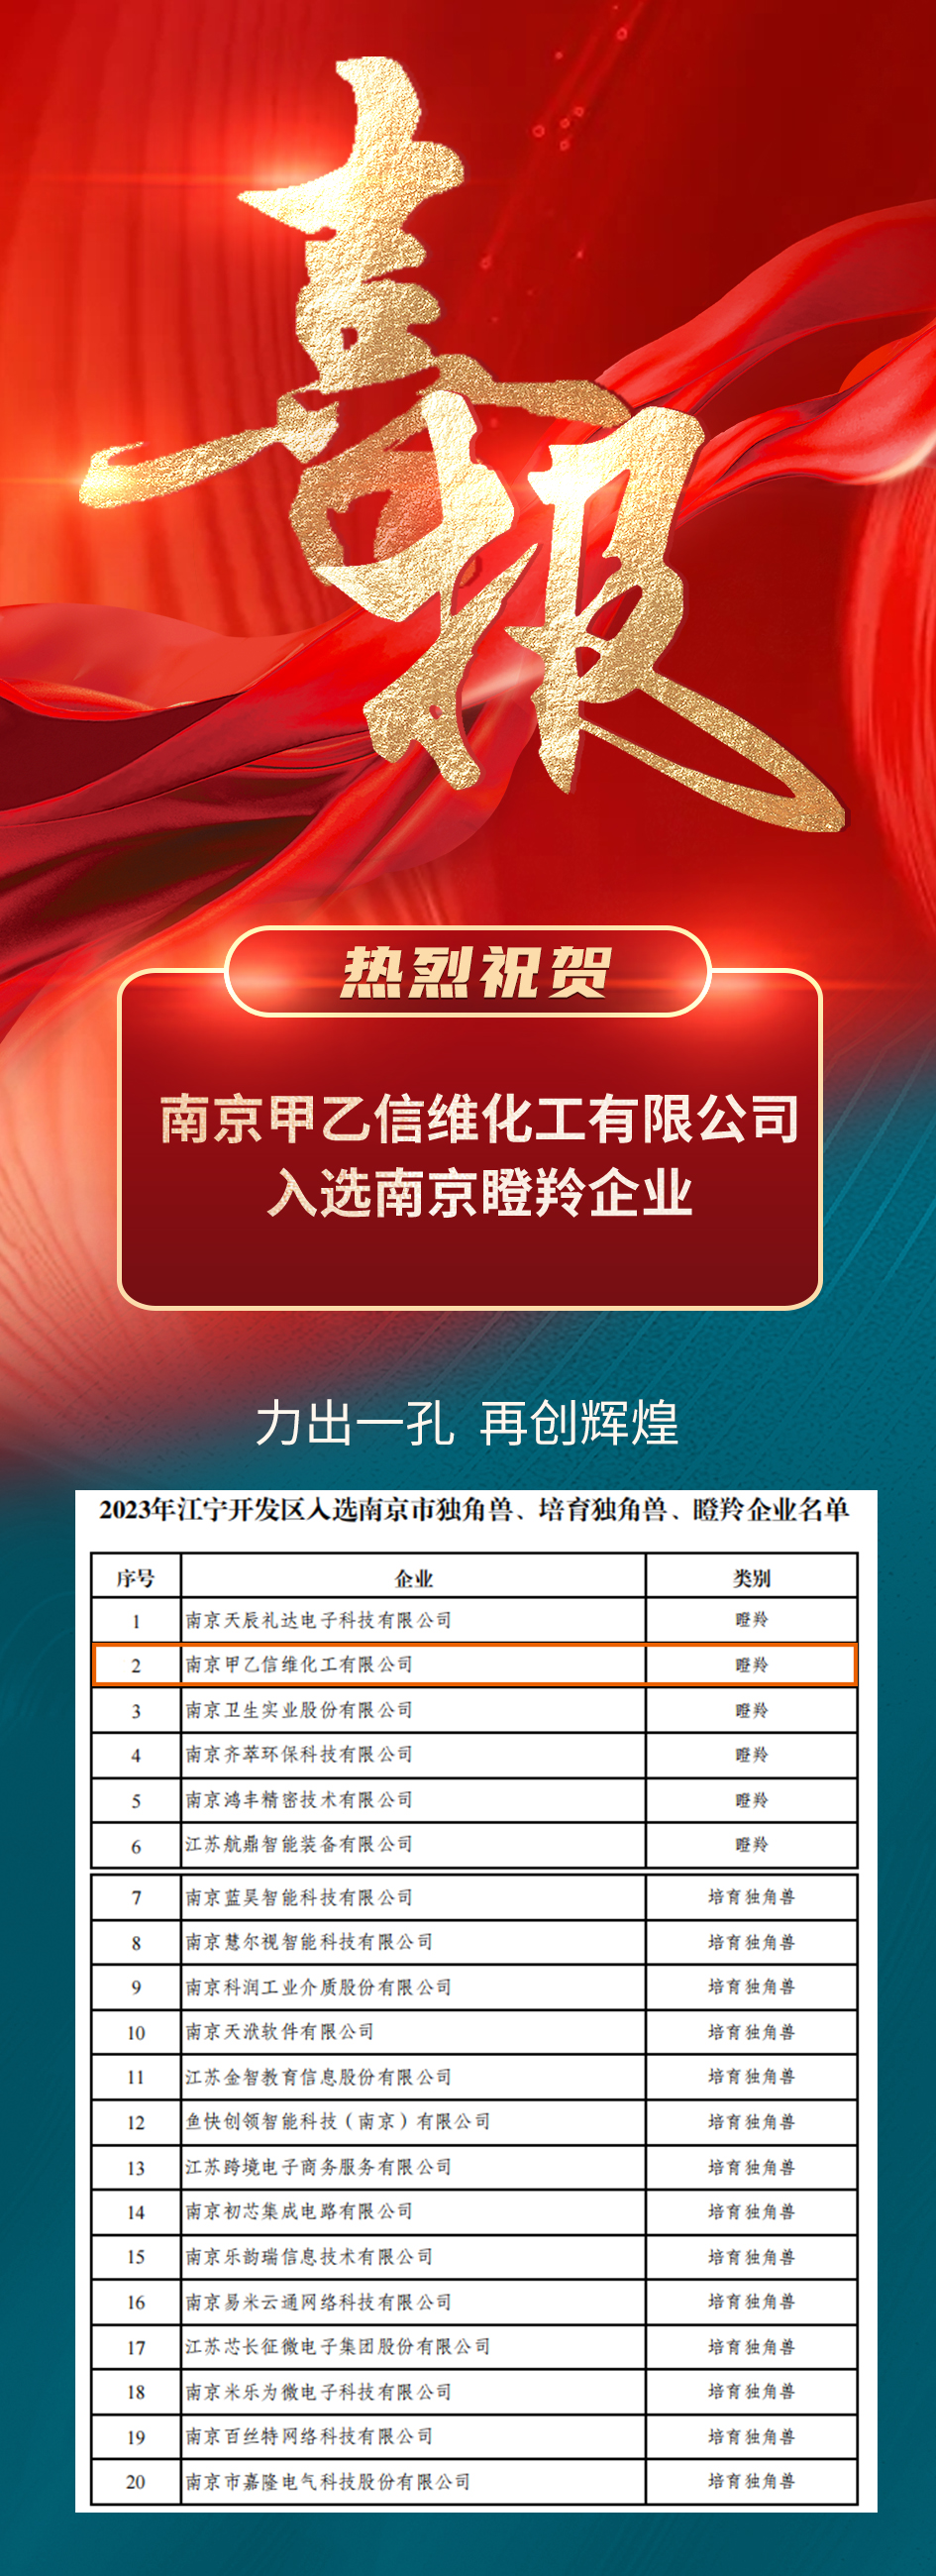 Sunway was awarded “Nanjing Gazelle Enterprise“